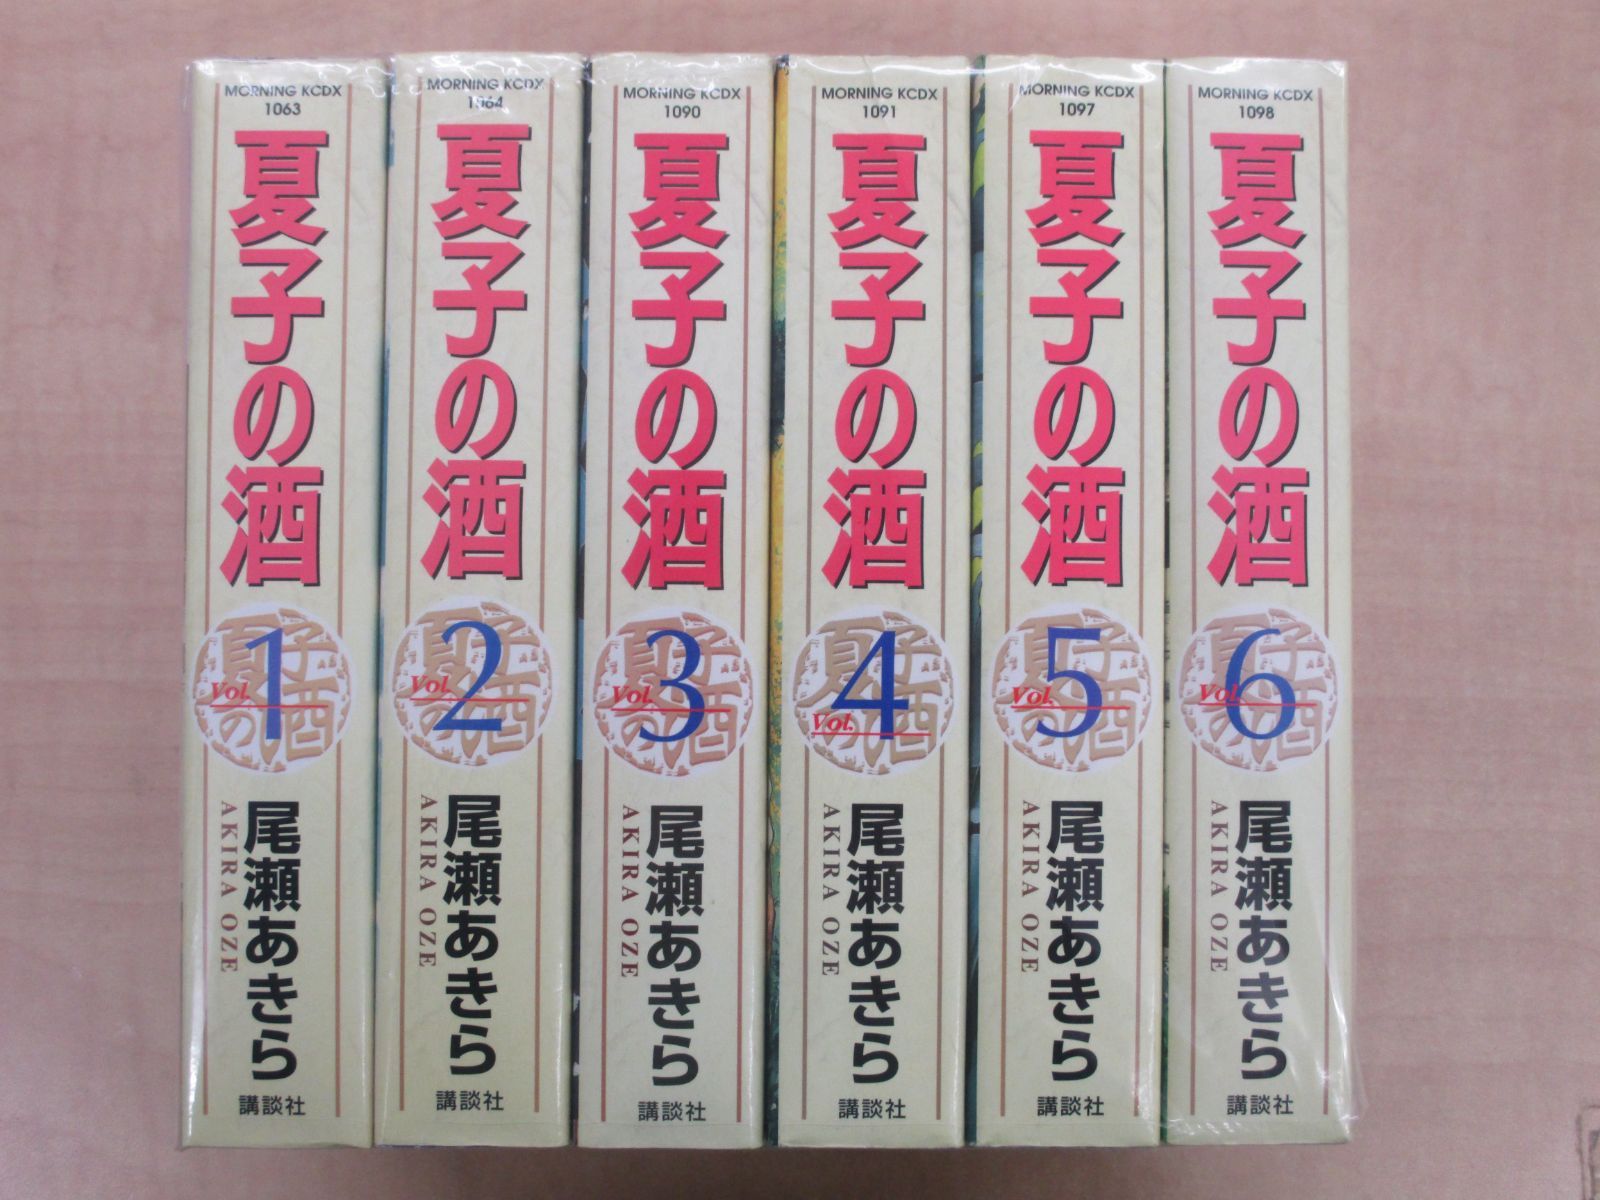 尾瀬あきら「夏子の酒」KCDX版全6巻セット - メルカリ